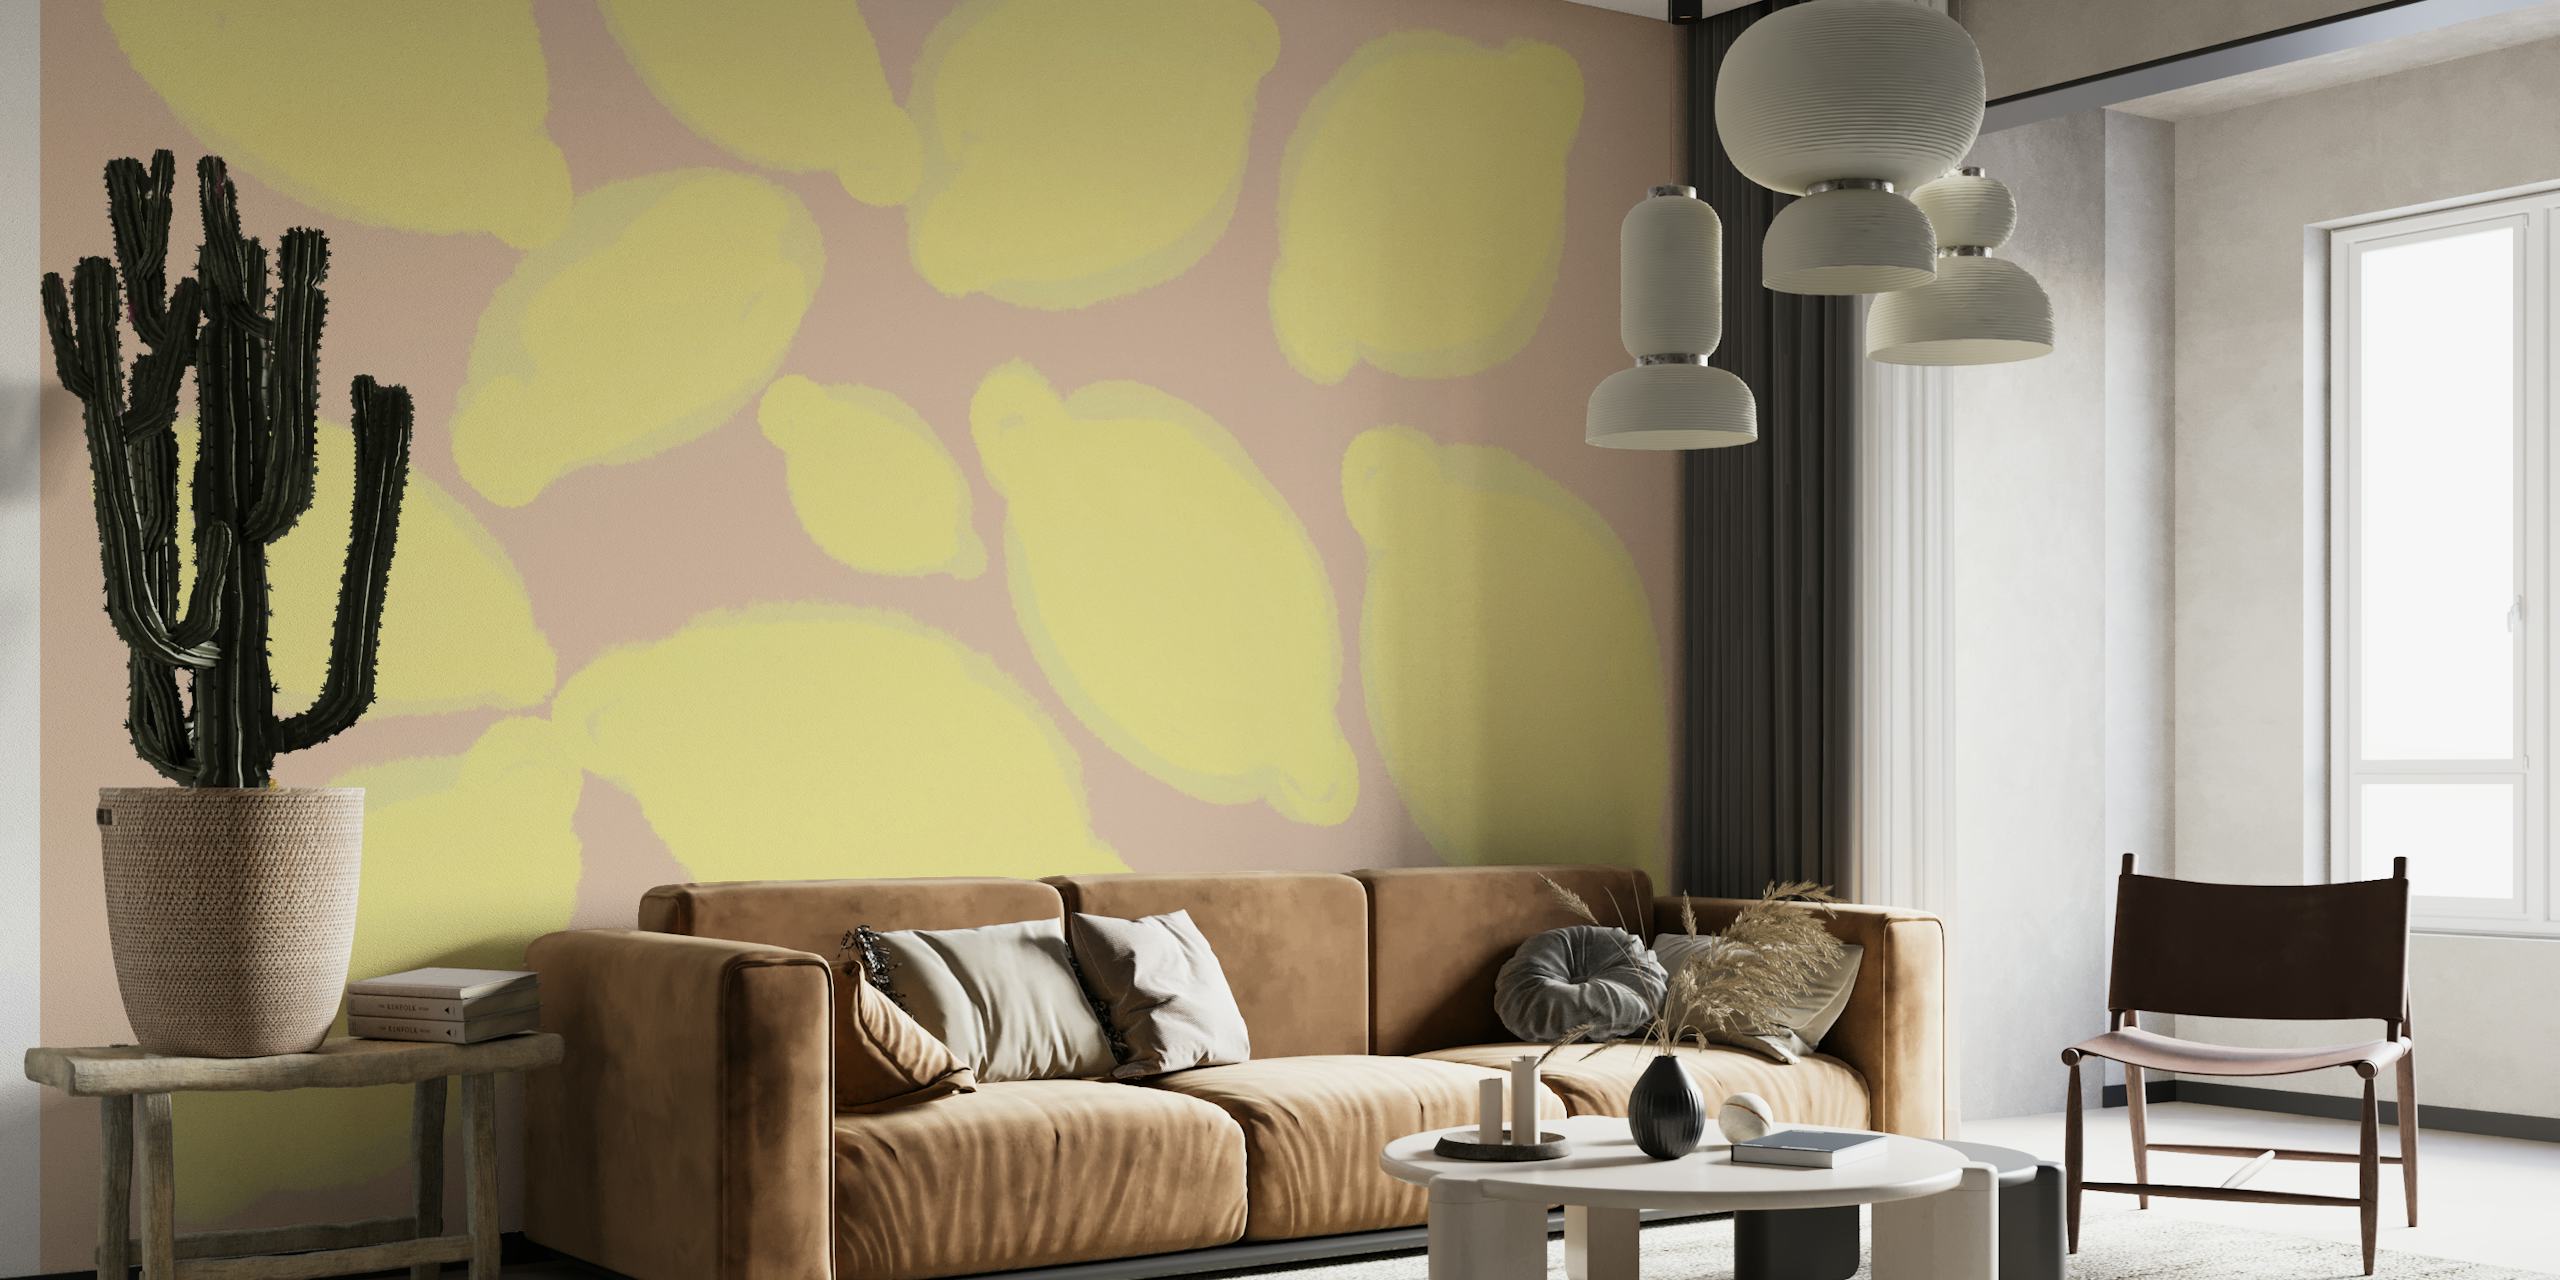 Geïllustreerd citroenenpatroon op een warme muurschildering als achtergrond